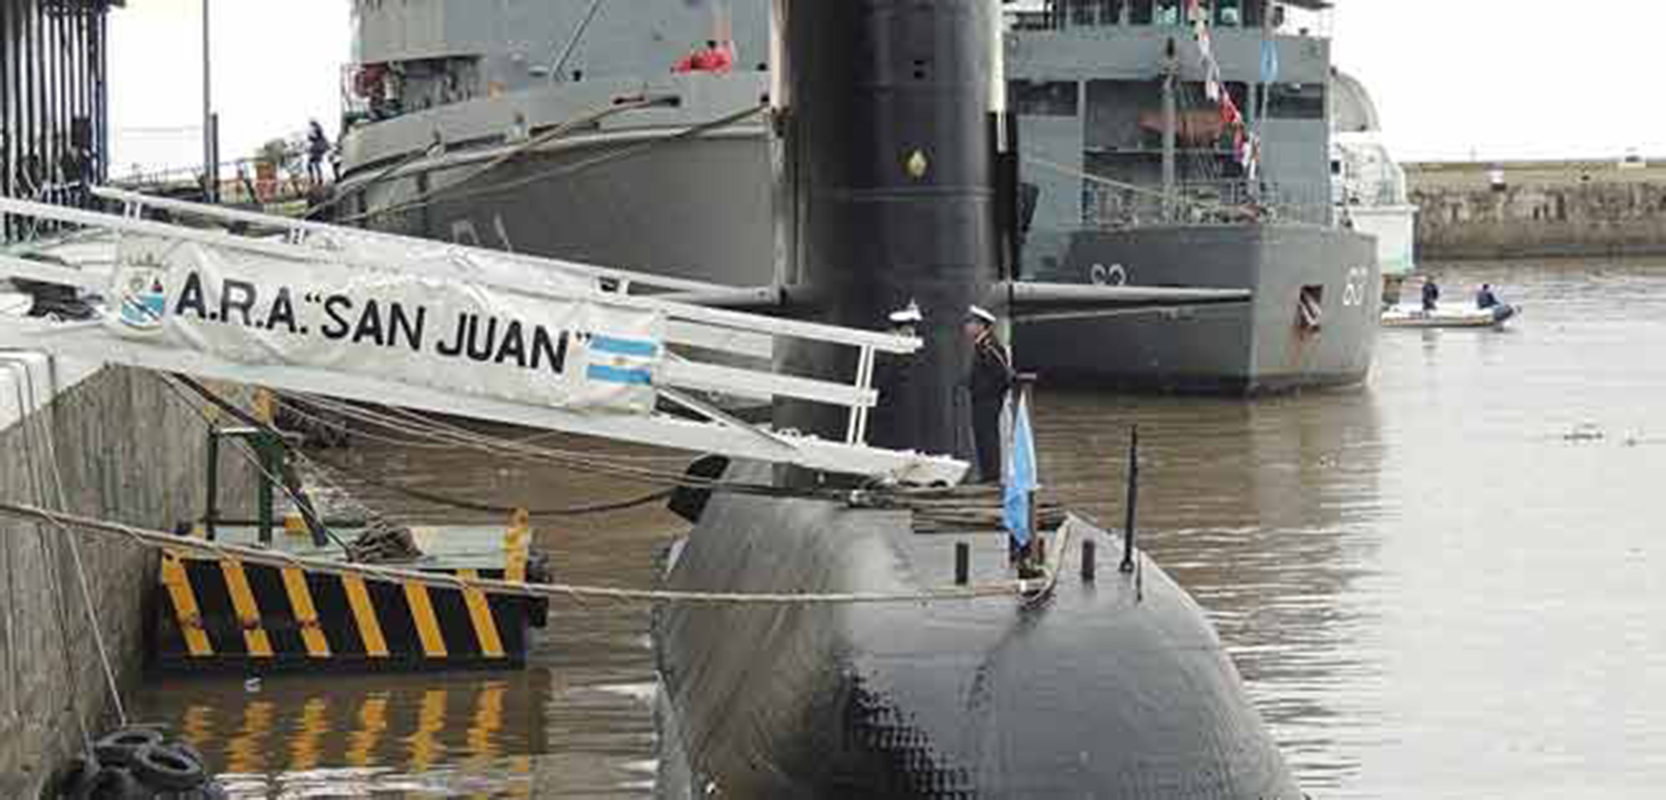 Gobierno argentino recuerda al submarino, una "tragedia" que "enluta a todos"